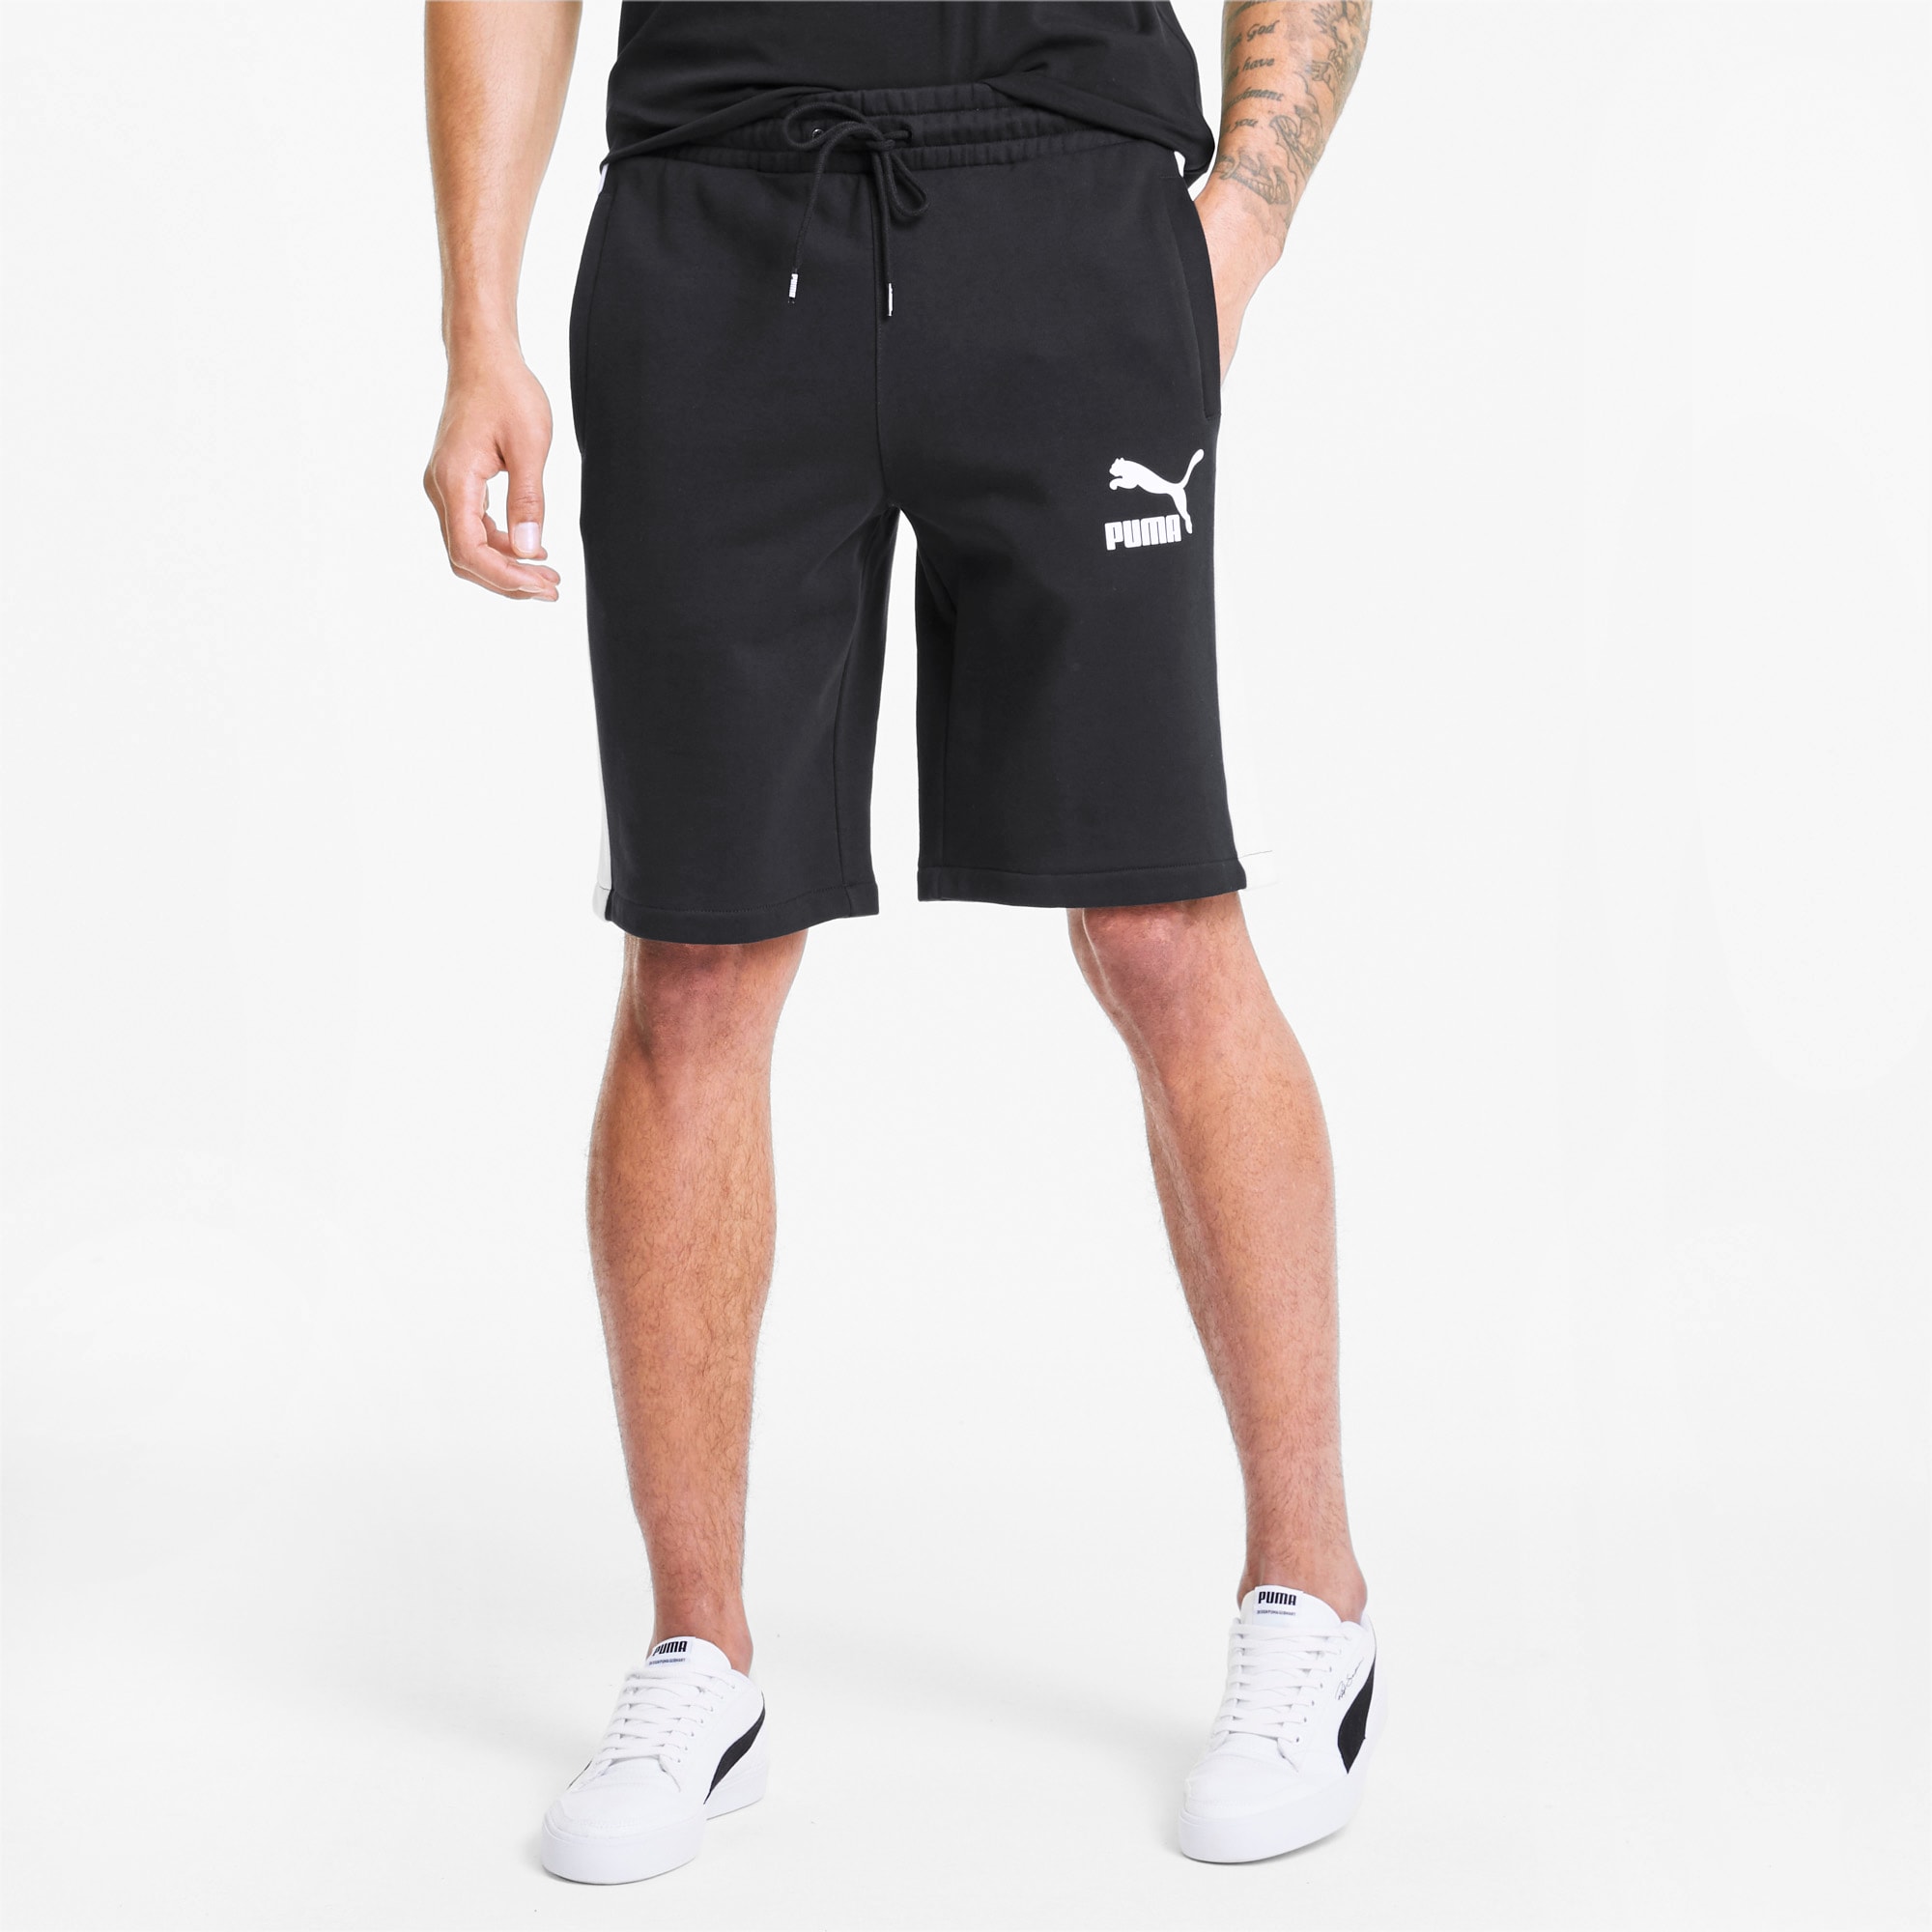 puma men's cotton shorts